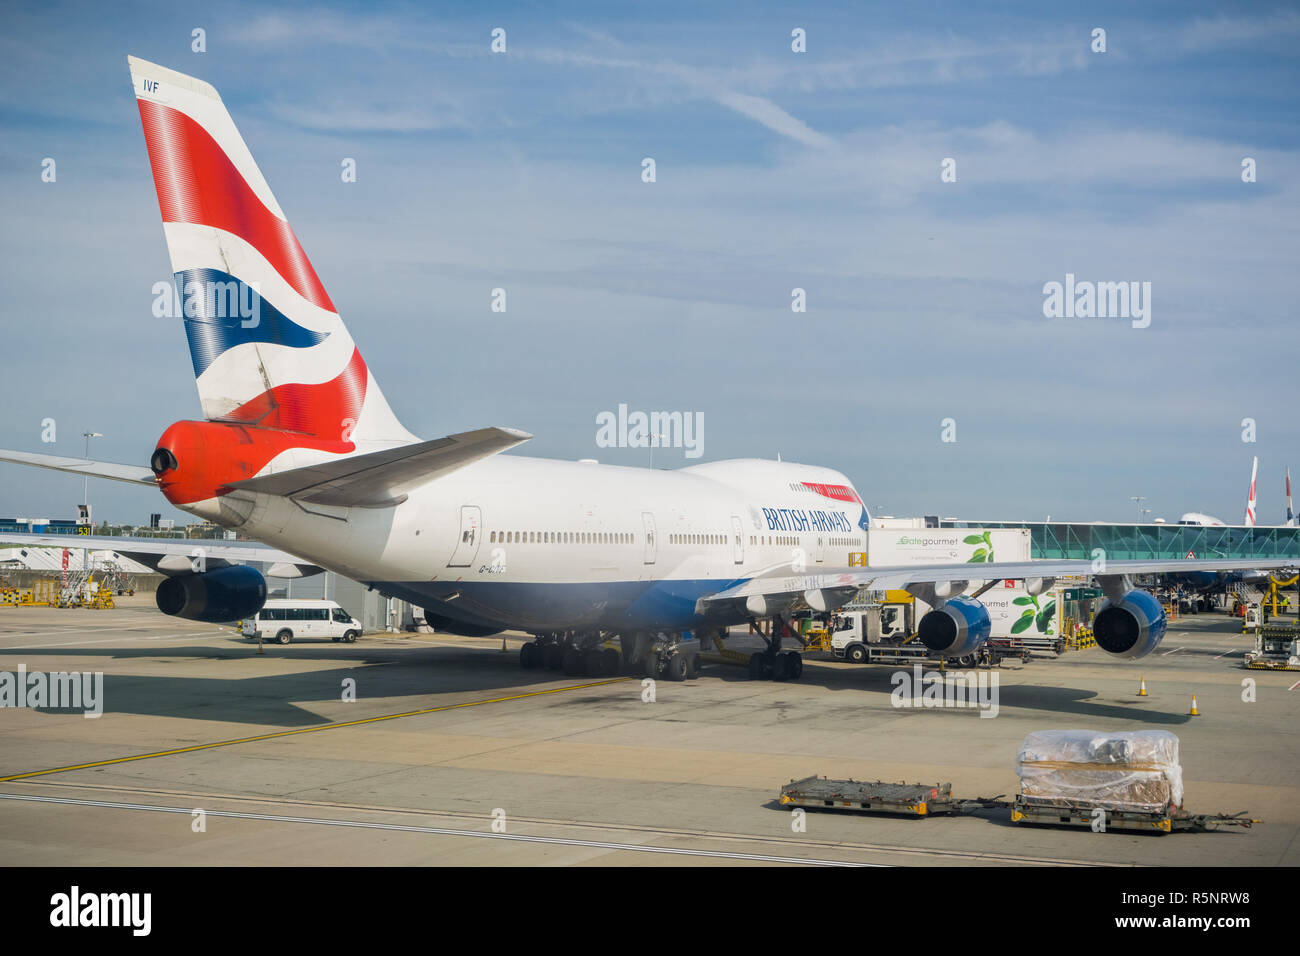 September 24, 2017, London/UK - British Airways flugzeug fertig, Flug von Terminal 5, Heathrow zu nehmen Stockfoto